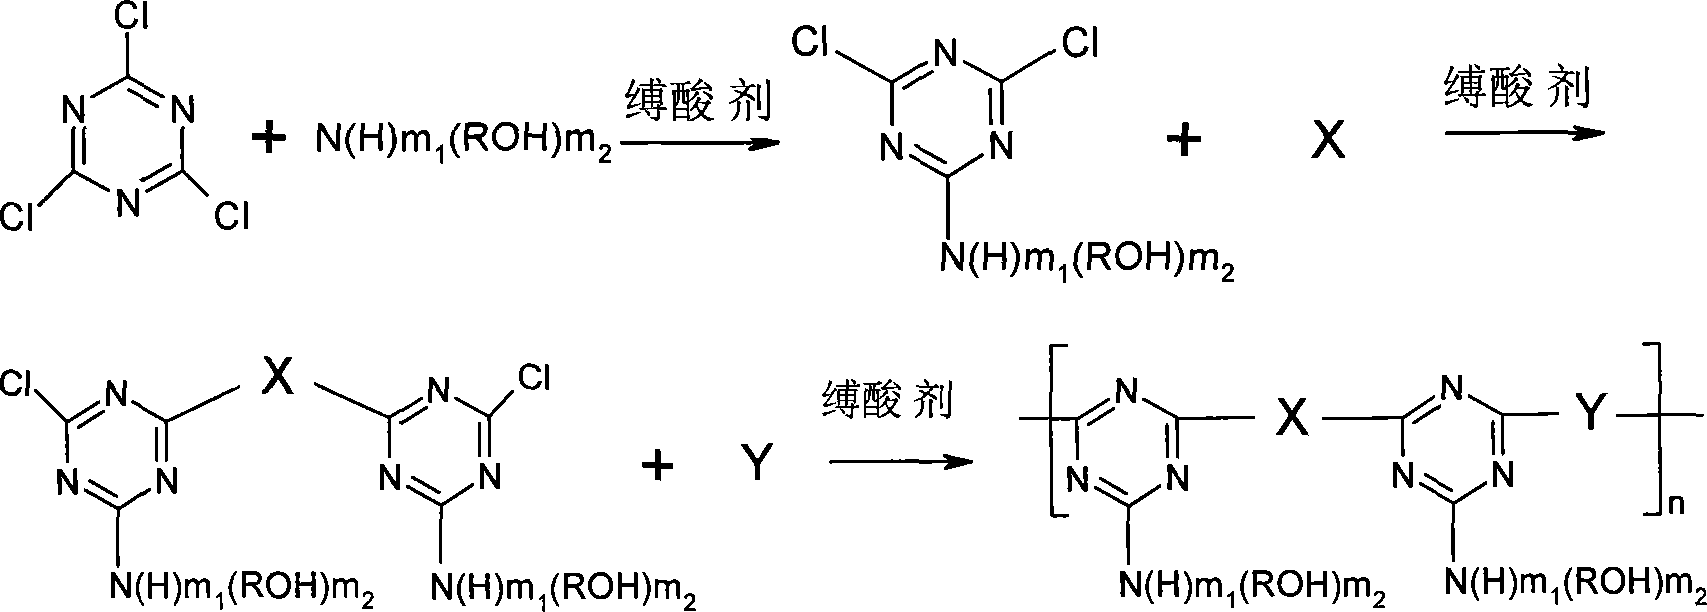 Triazine series oligomer and its synthesizing method